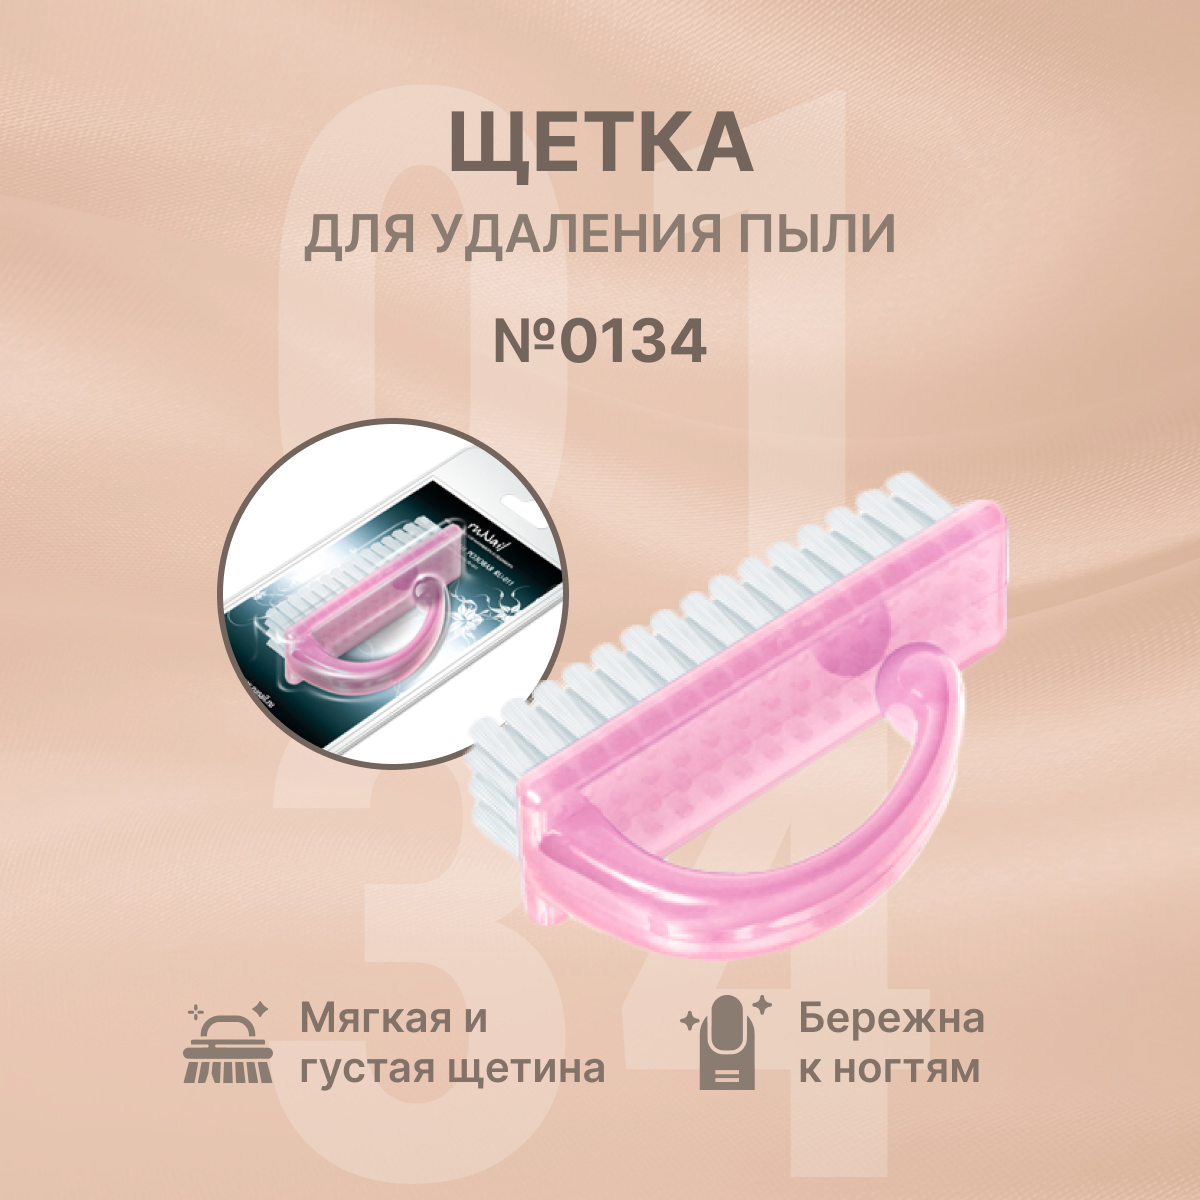 Щетка для удаления пыли (розовая), RU-0134